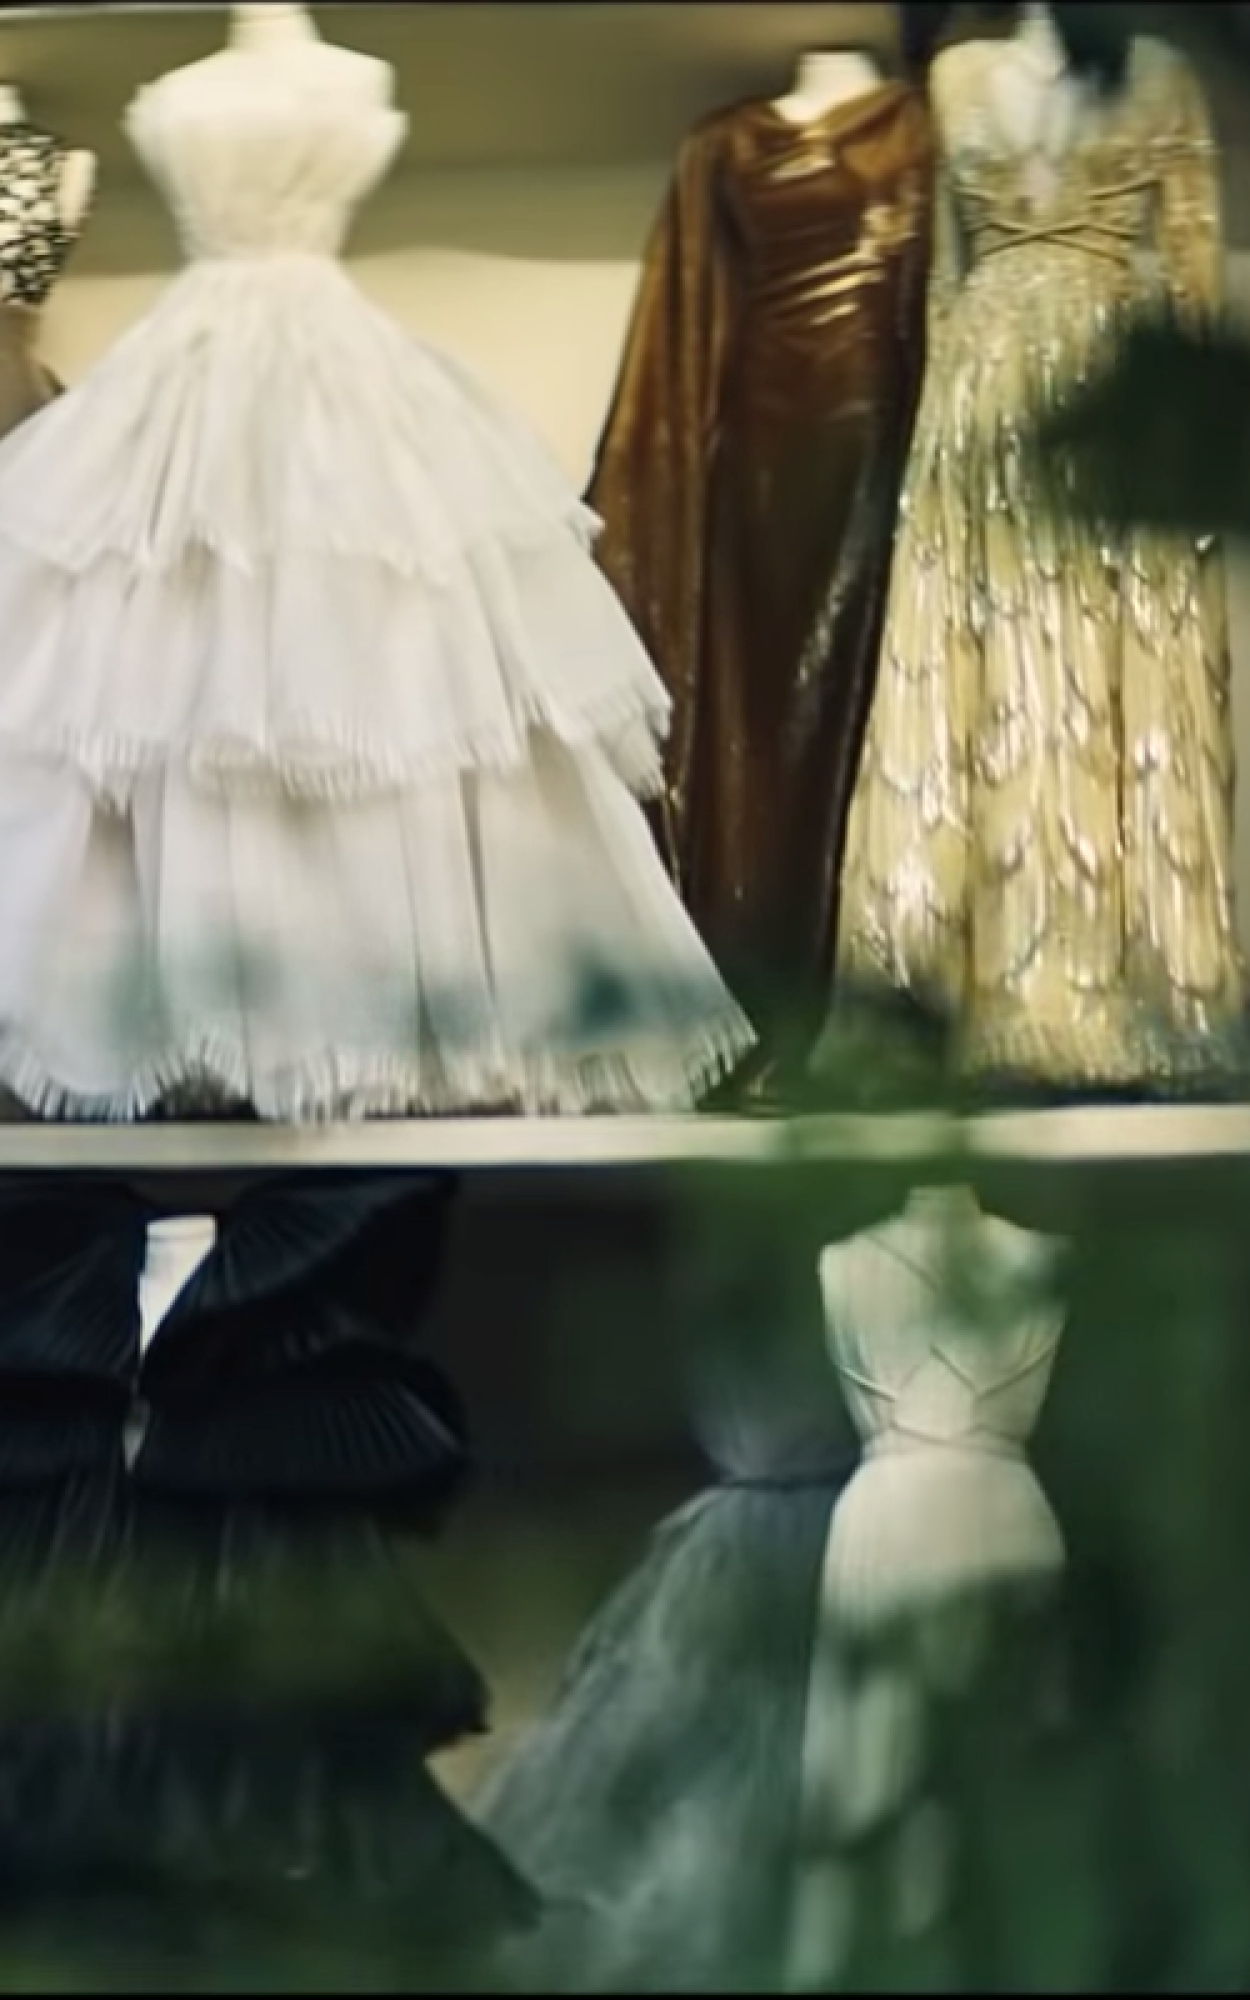 Фильм Маттео Гарроне, 37 образов и мини-копии платьев. Главное о новой кутюрной коллекции Dior